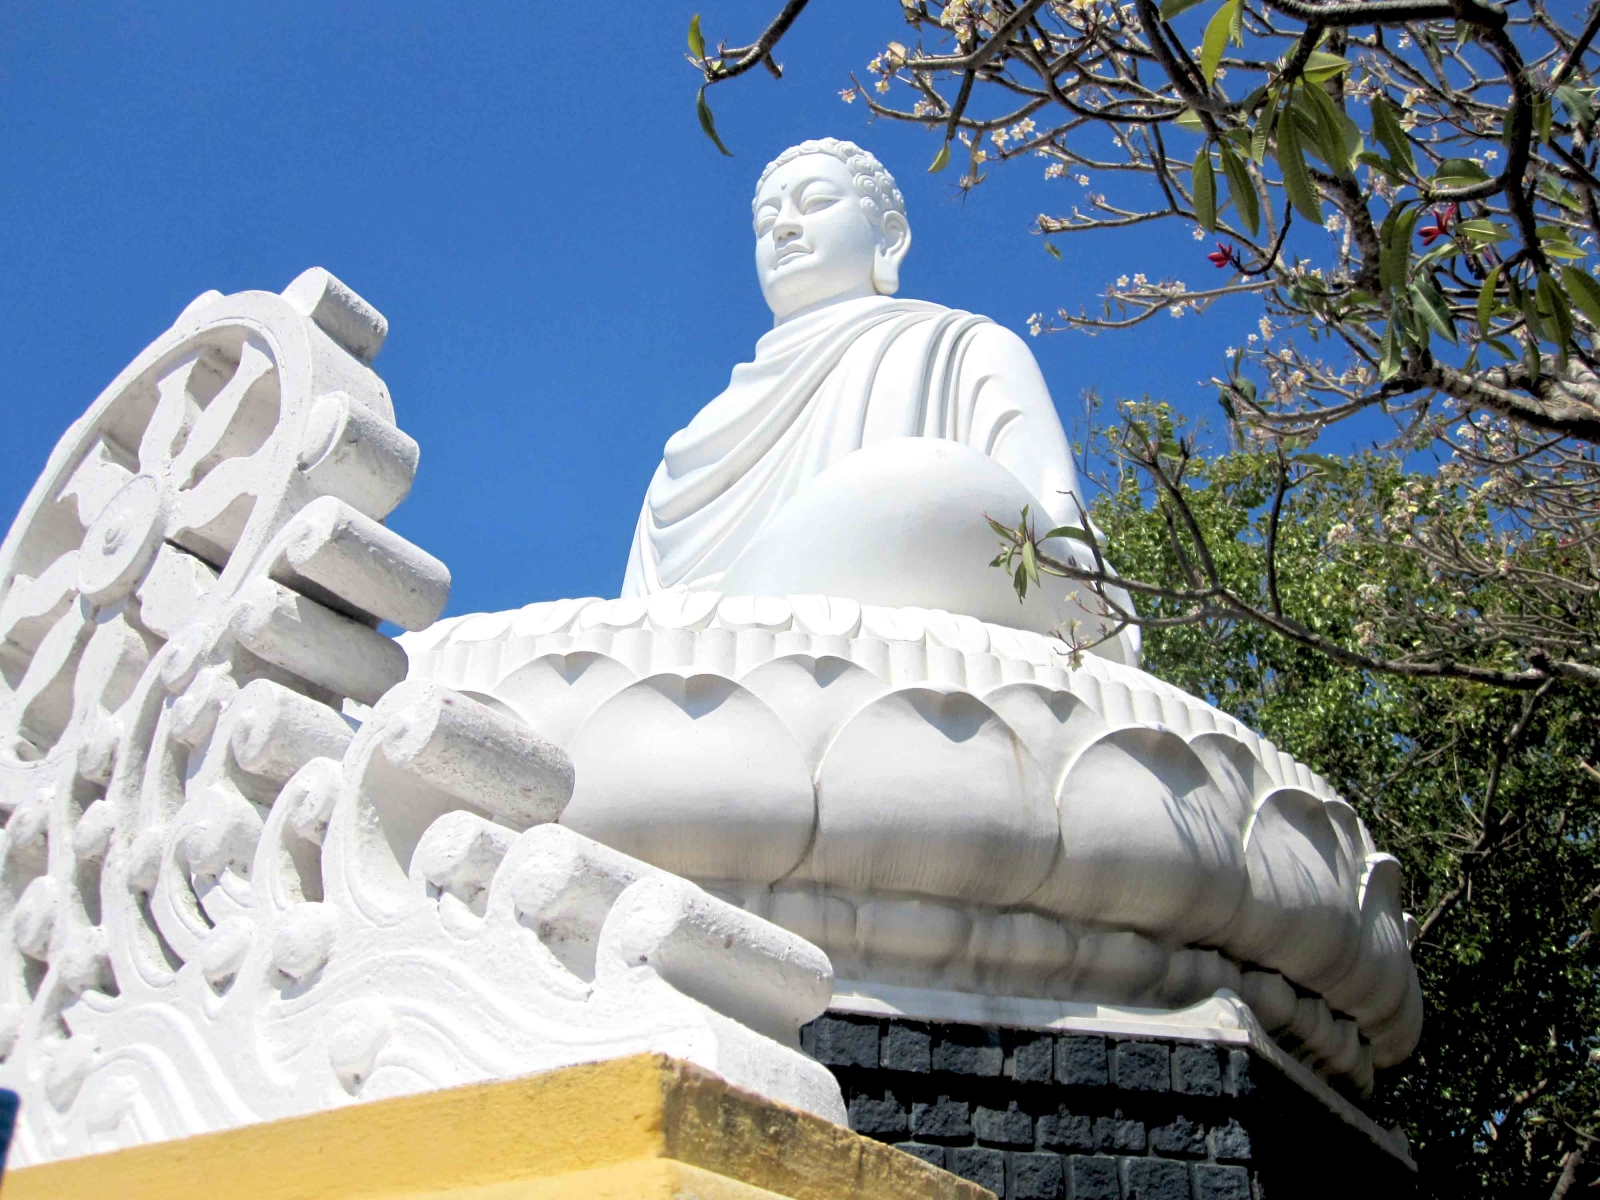 Cầu an đầu năm với những ngôi chùa nổi tiếng tại Vũng Tàu